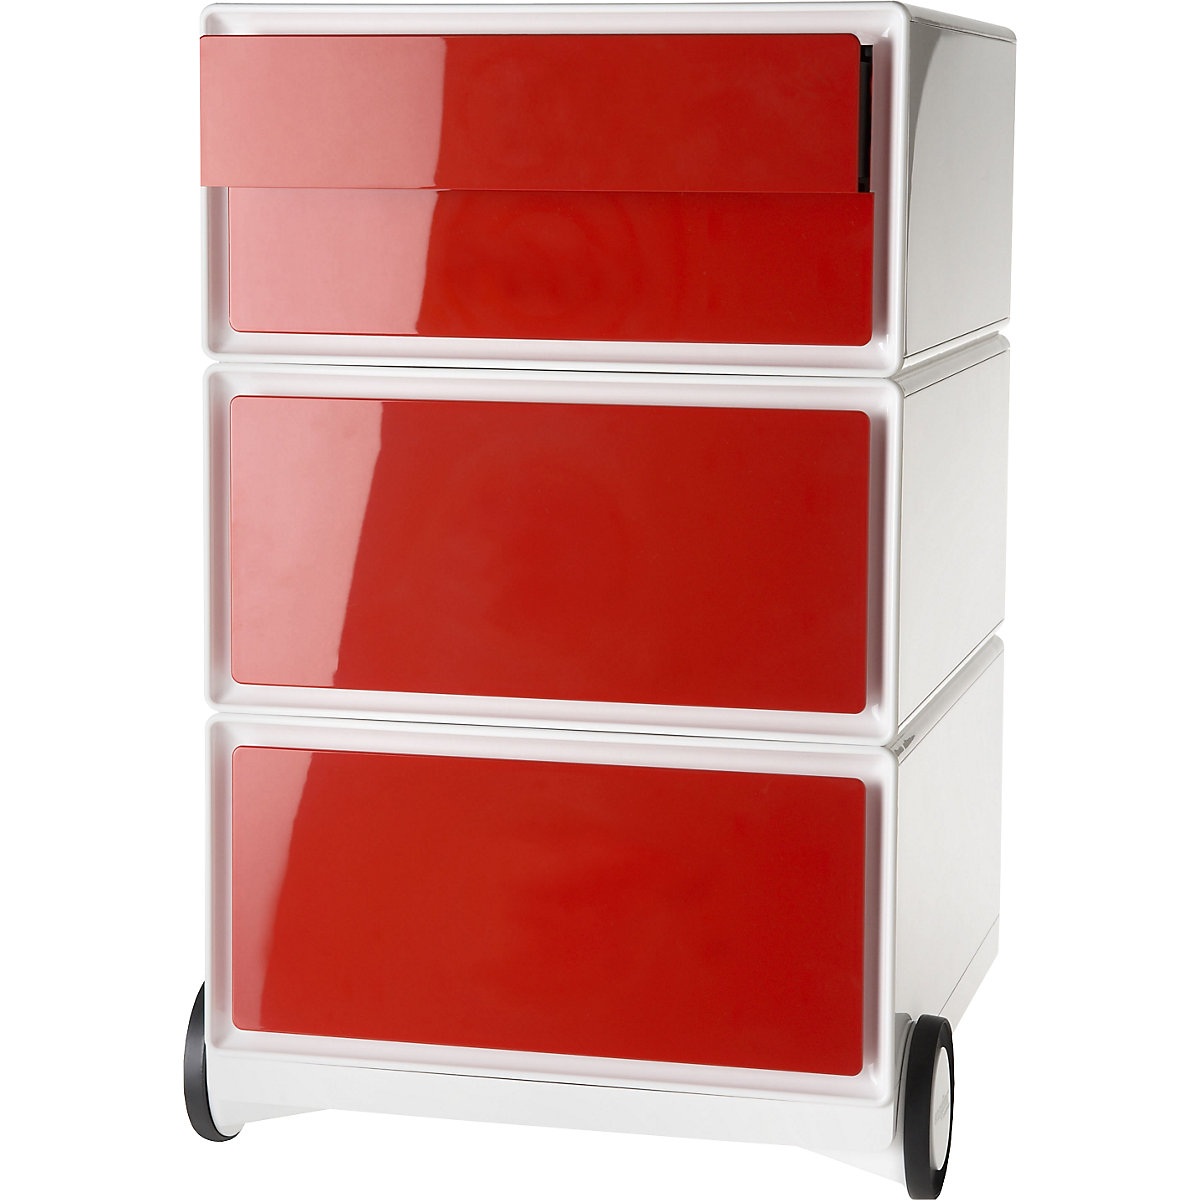 Pomični predalnik easyBox® – Paperflow, 2 predala, 2 nižja predala, bele / rdeče barve-8